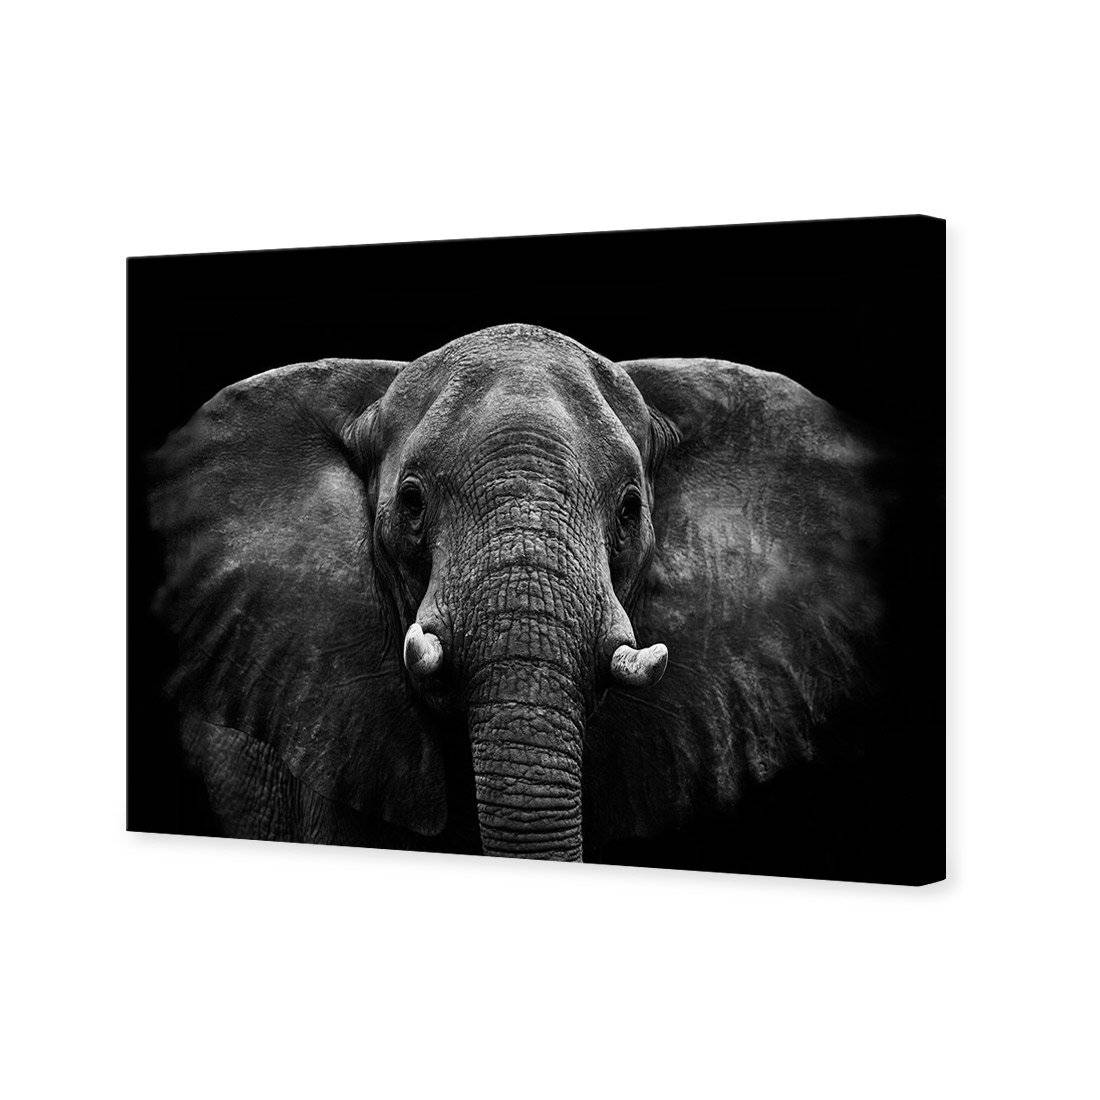 Regal Elephant Canvas Art-Canvas-Wall Art Designs-45x30cm-Canvas - No Frame-Wall Art Designs